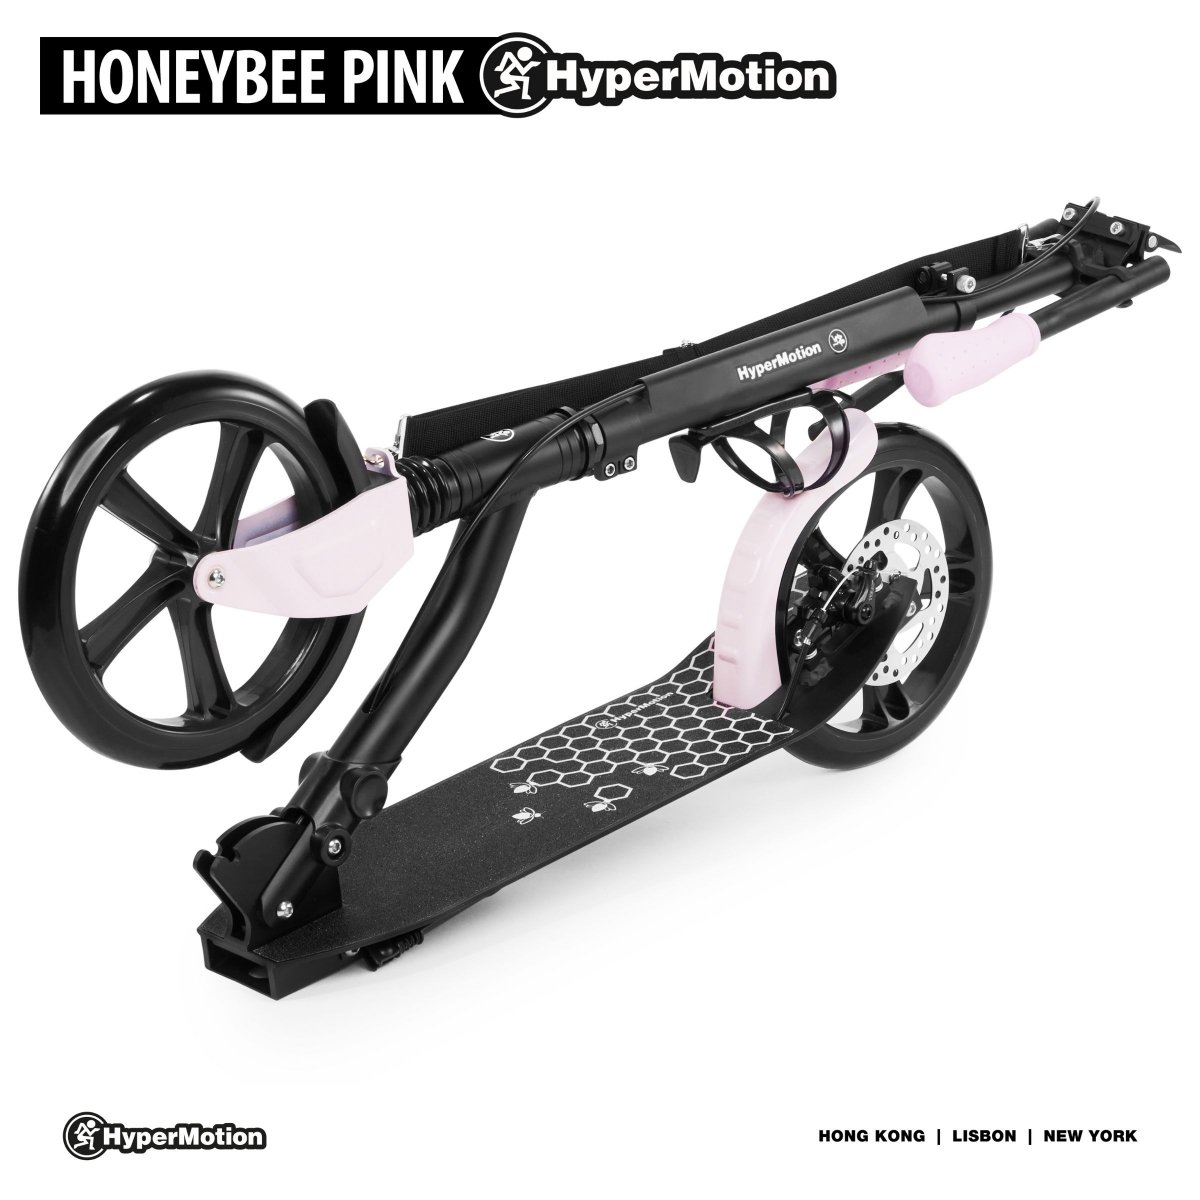 Hulajnoga miejska dwukołowa HONEYBEE Pink HyperMotion 100kg - full aluminium, duże koła 250mm